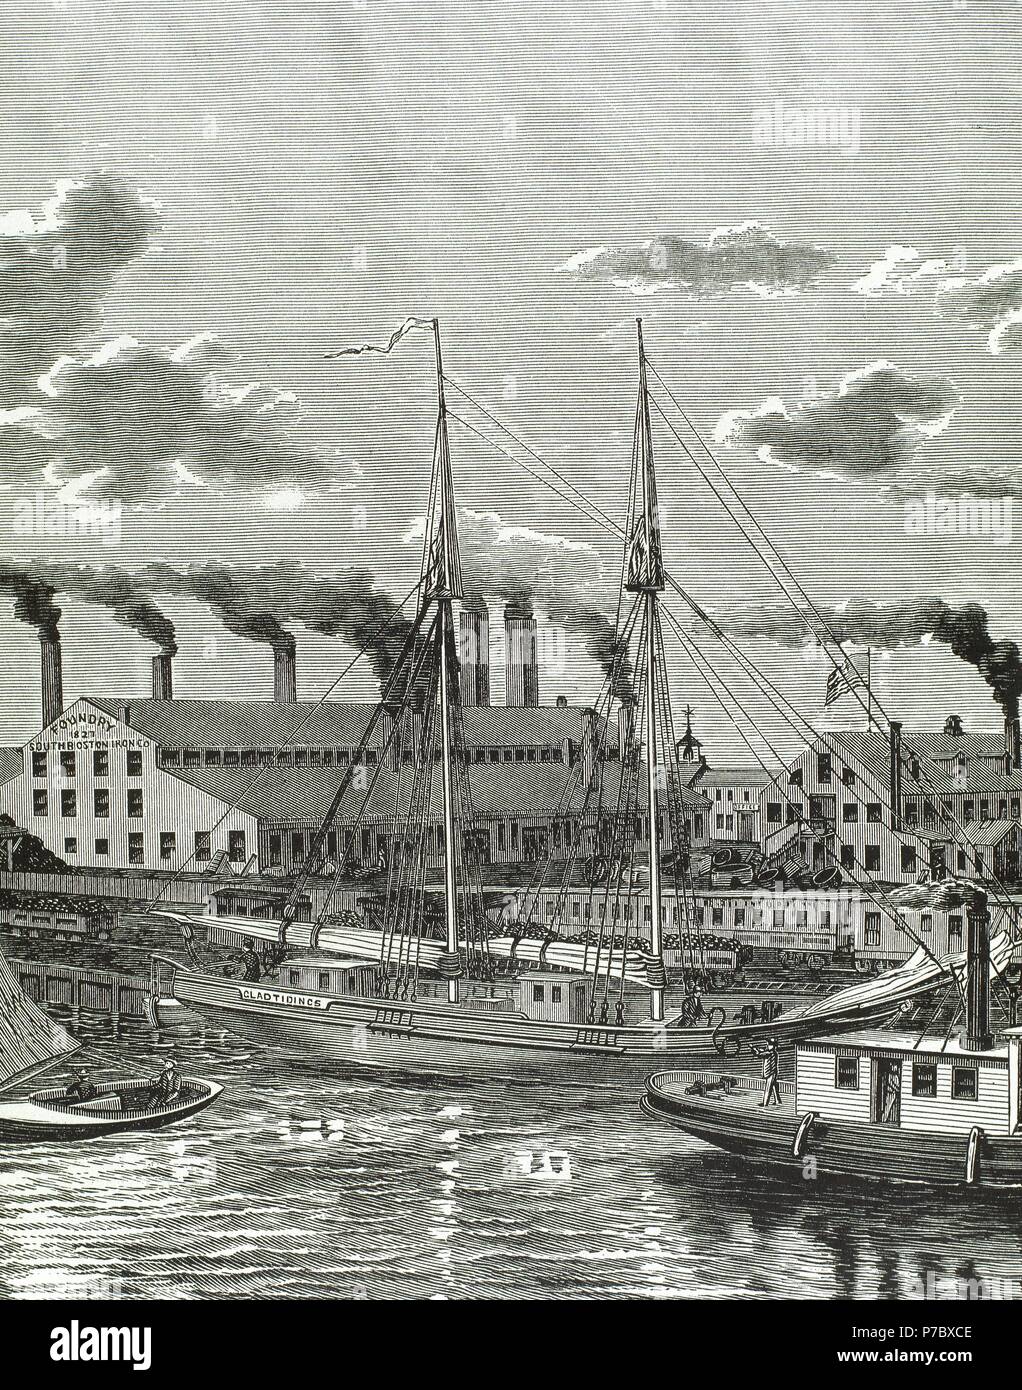 Die Vereinigten Staaten. Boston (Massachusetts). des 19. Jahrhunderts. South Boston Iron Company, 1827. Gießerei im Hafengebiet. Kupferstich, 1884. Stockfoto